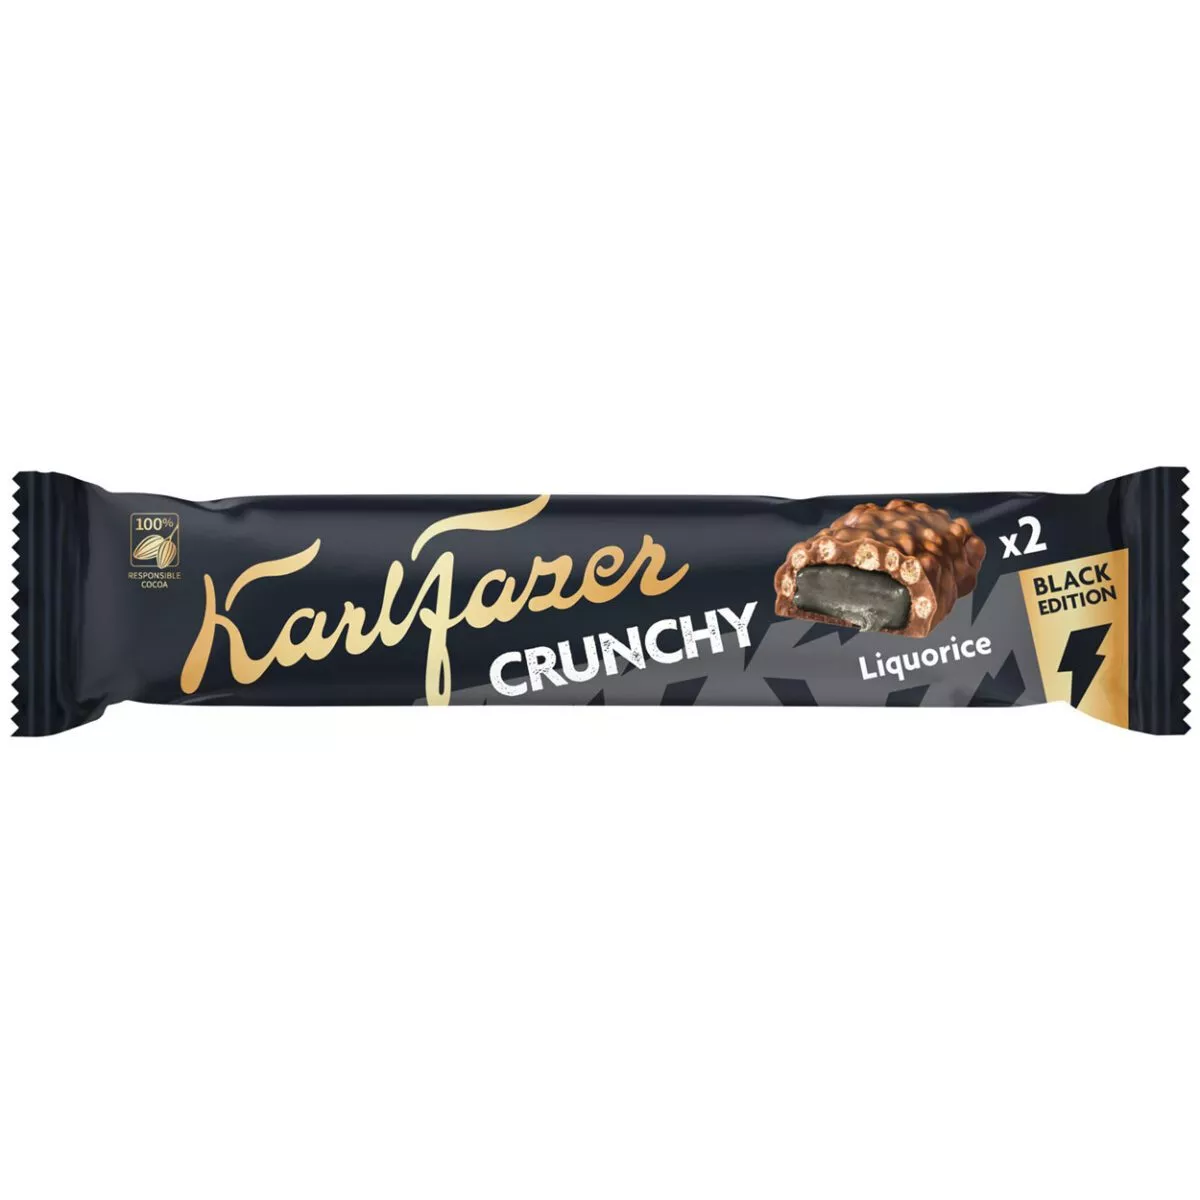 Karl Fazer Crunchy Black Edition (55g) 1